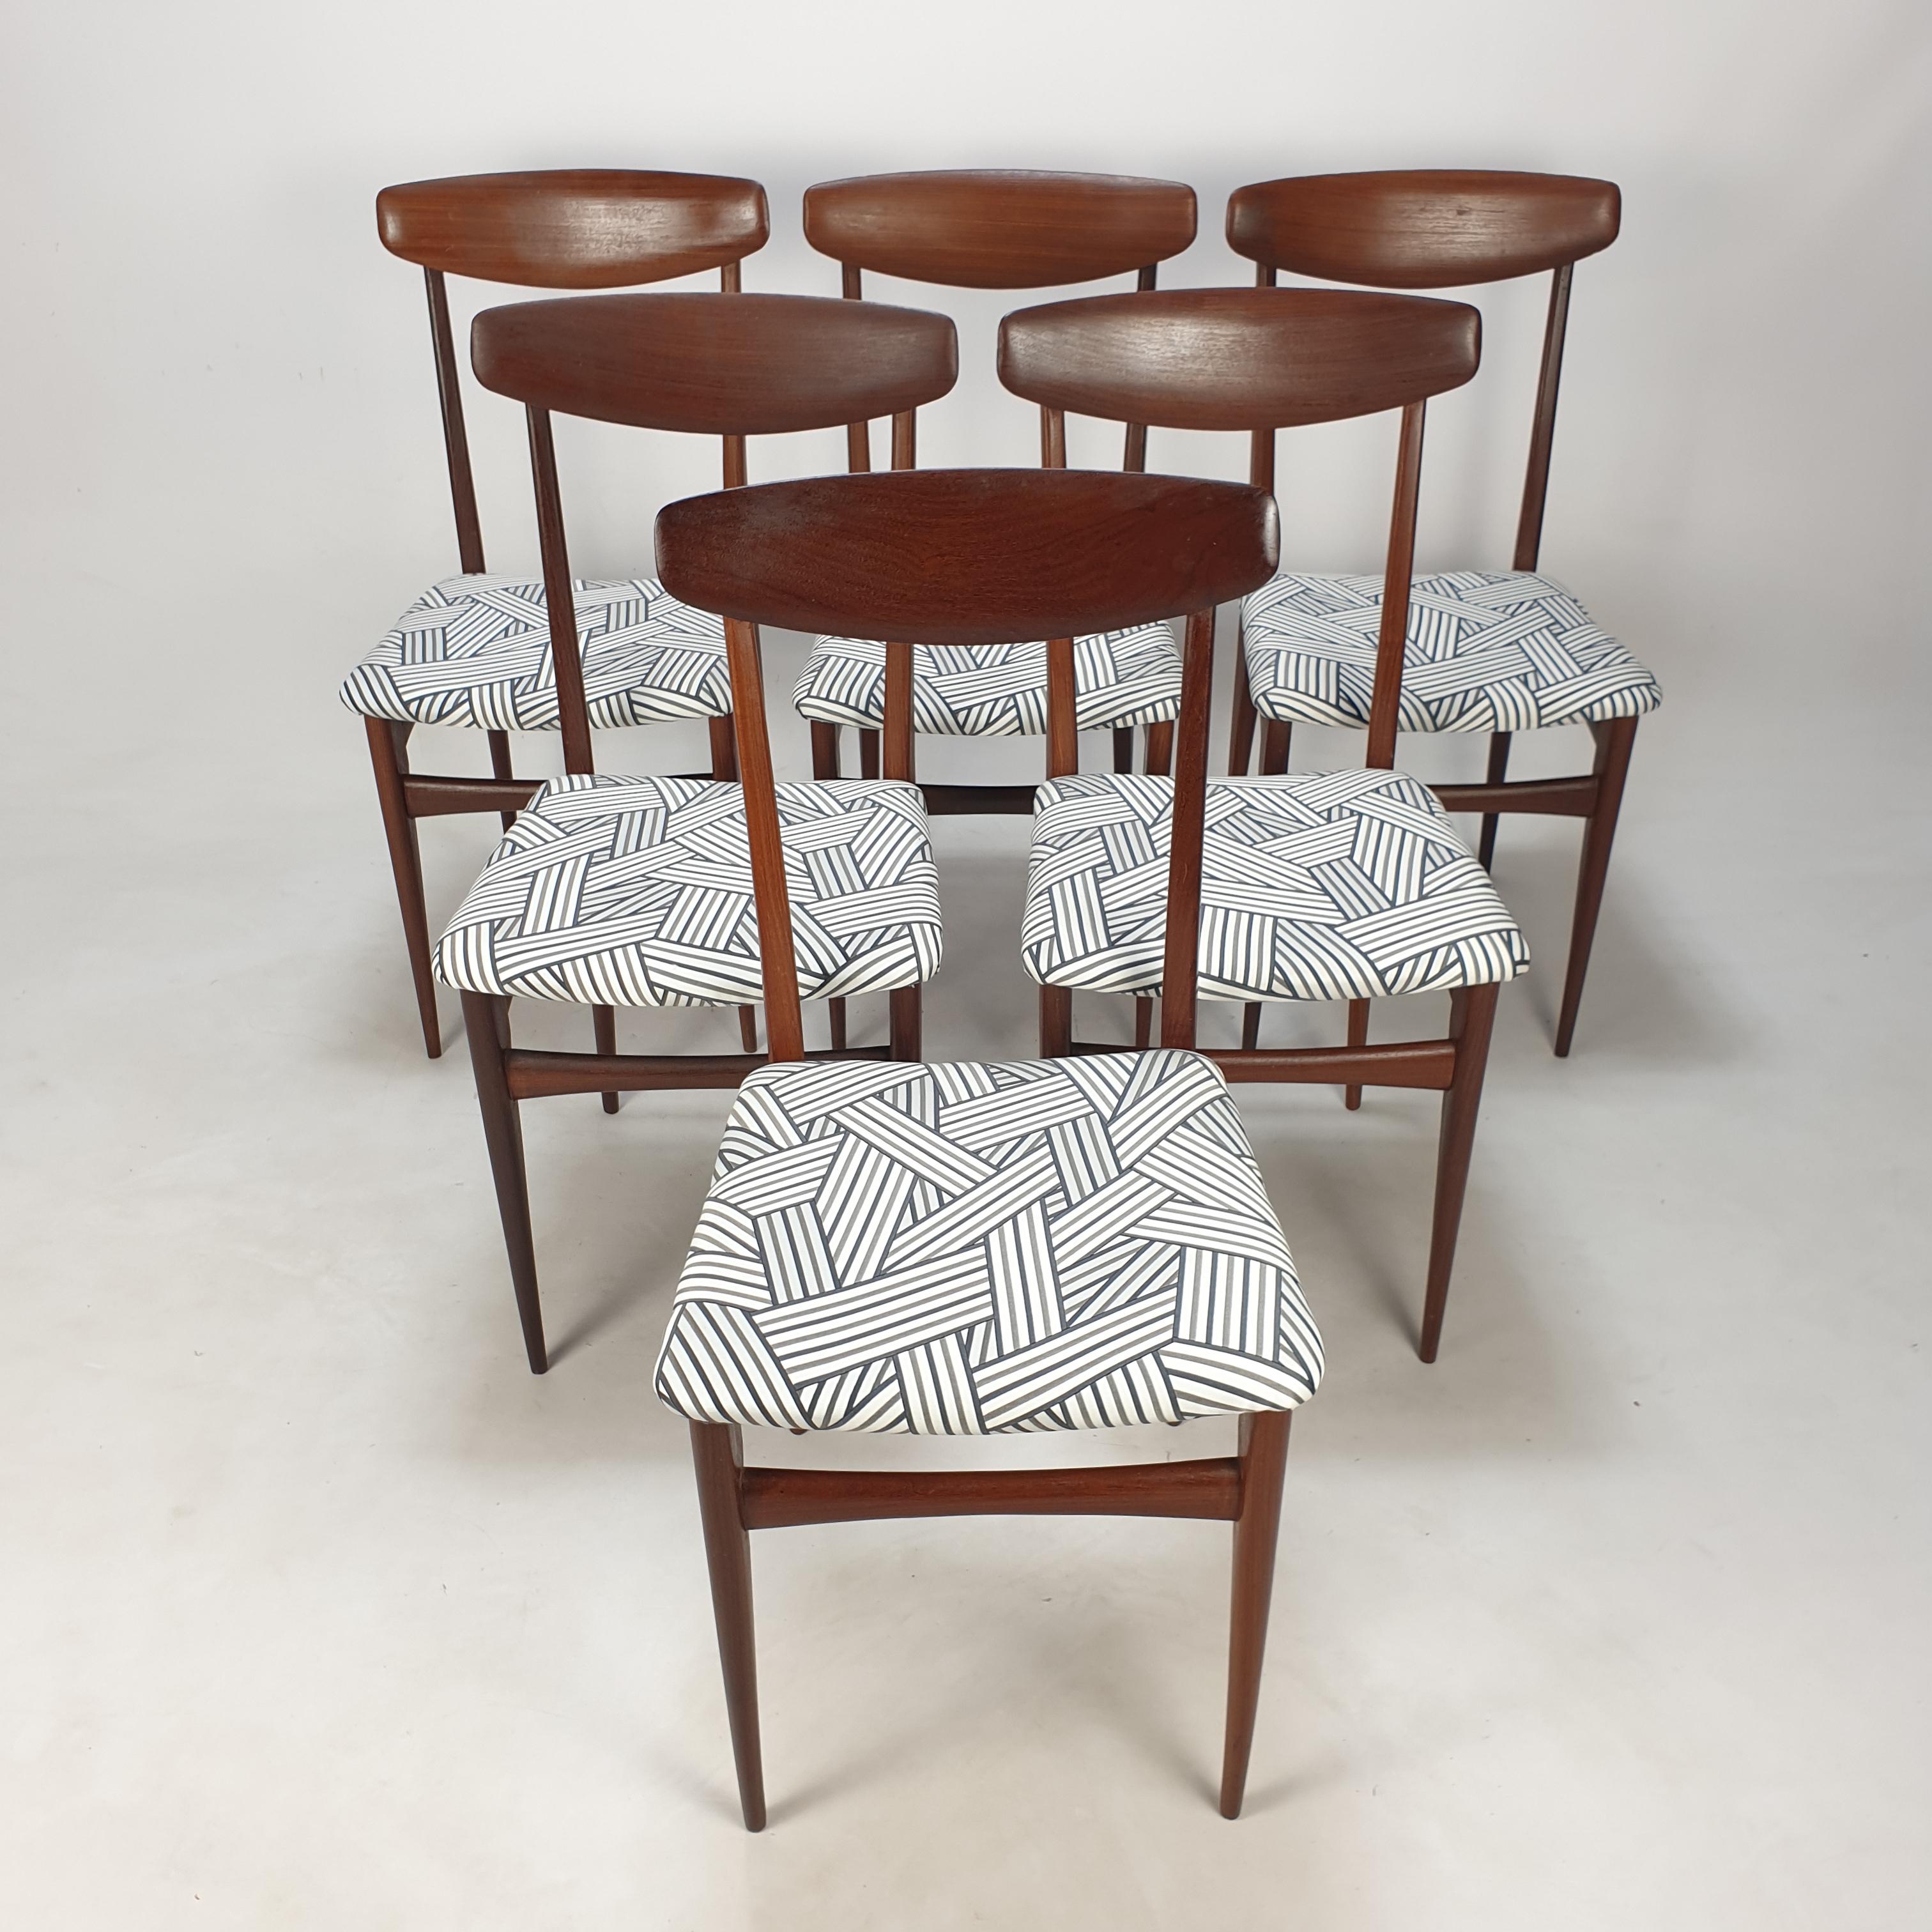 Schöner Satz von 6 Esszimmerstühlen, entworfen und hergestellt in Italien in den 50er Jahren.

Die Struktur aus Teakholz ist sehr elegant, aber solide.

Die Stühle sind gerade neu gepolstert worden, mit einem neuen, wunderschönen Dedar Italy